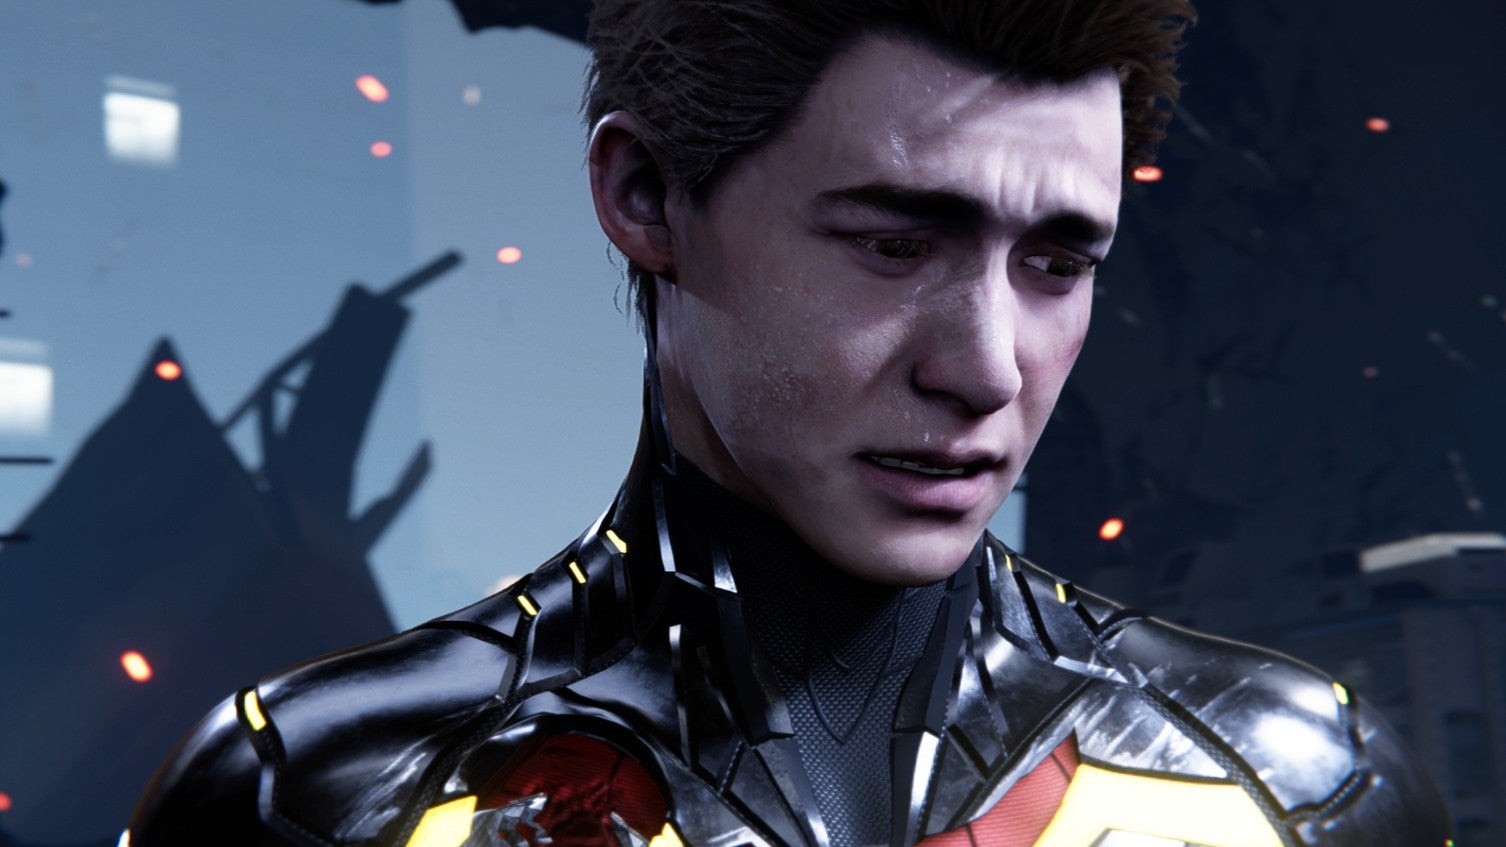 Image for Marvel's Spider-Man PC mod brings back Peter Parker's original face